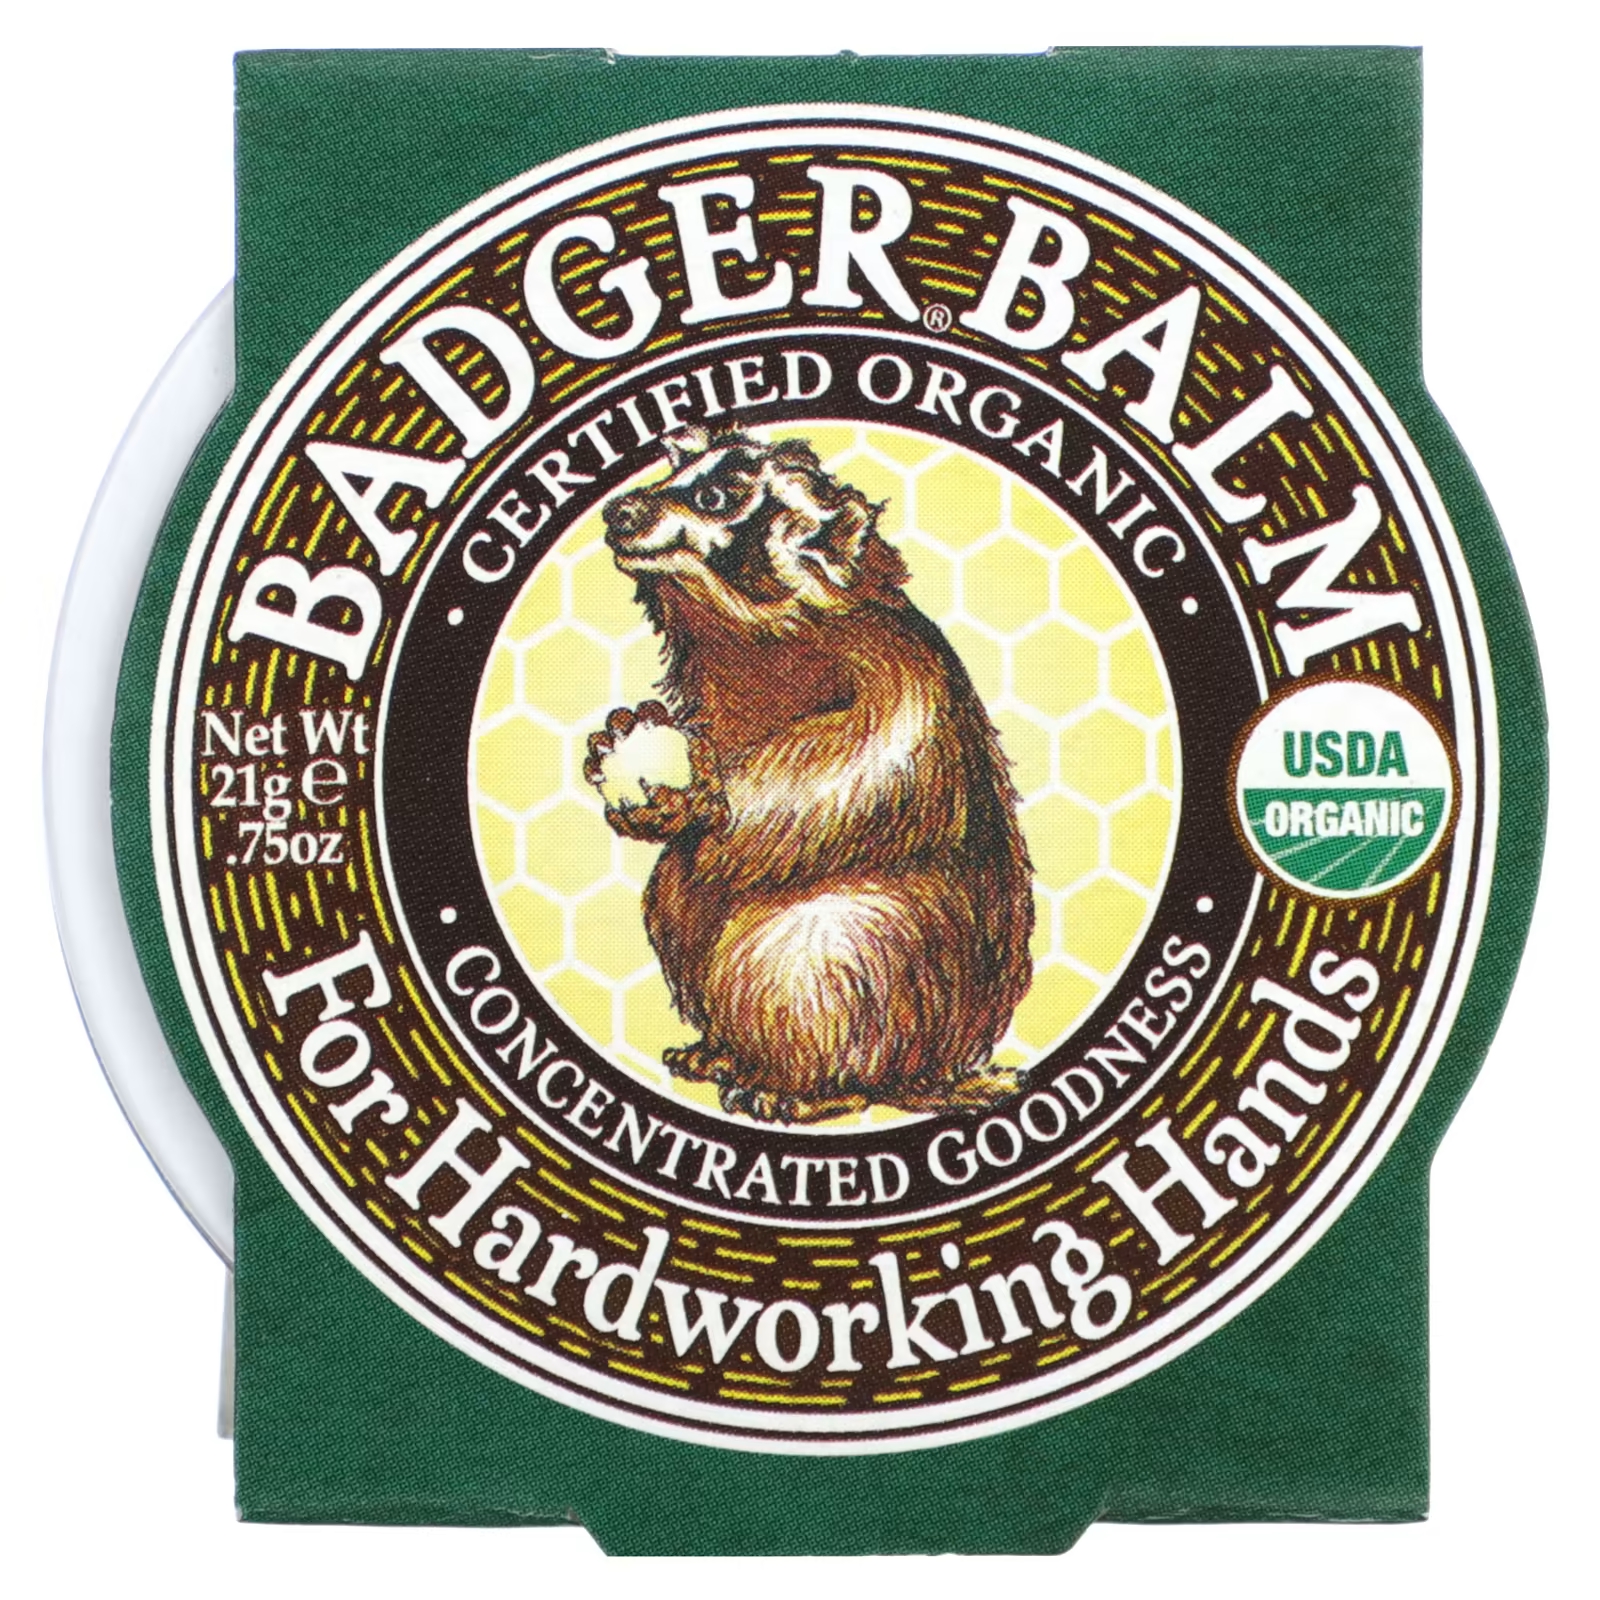 Органический бальзам Badger Company badger for hardworking hands, 21 гр.